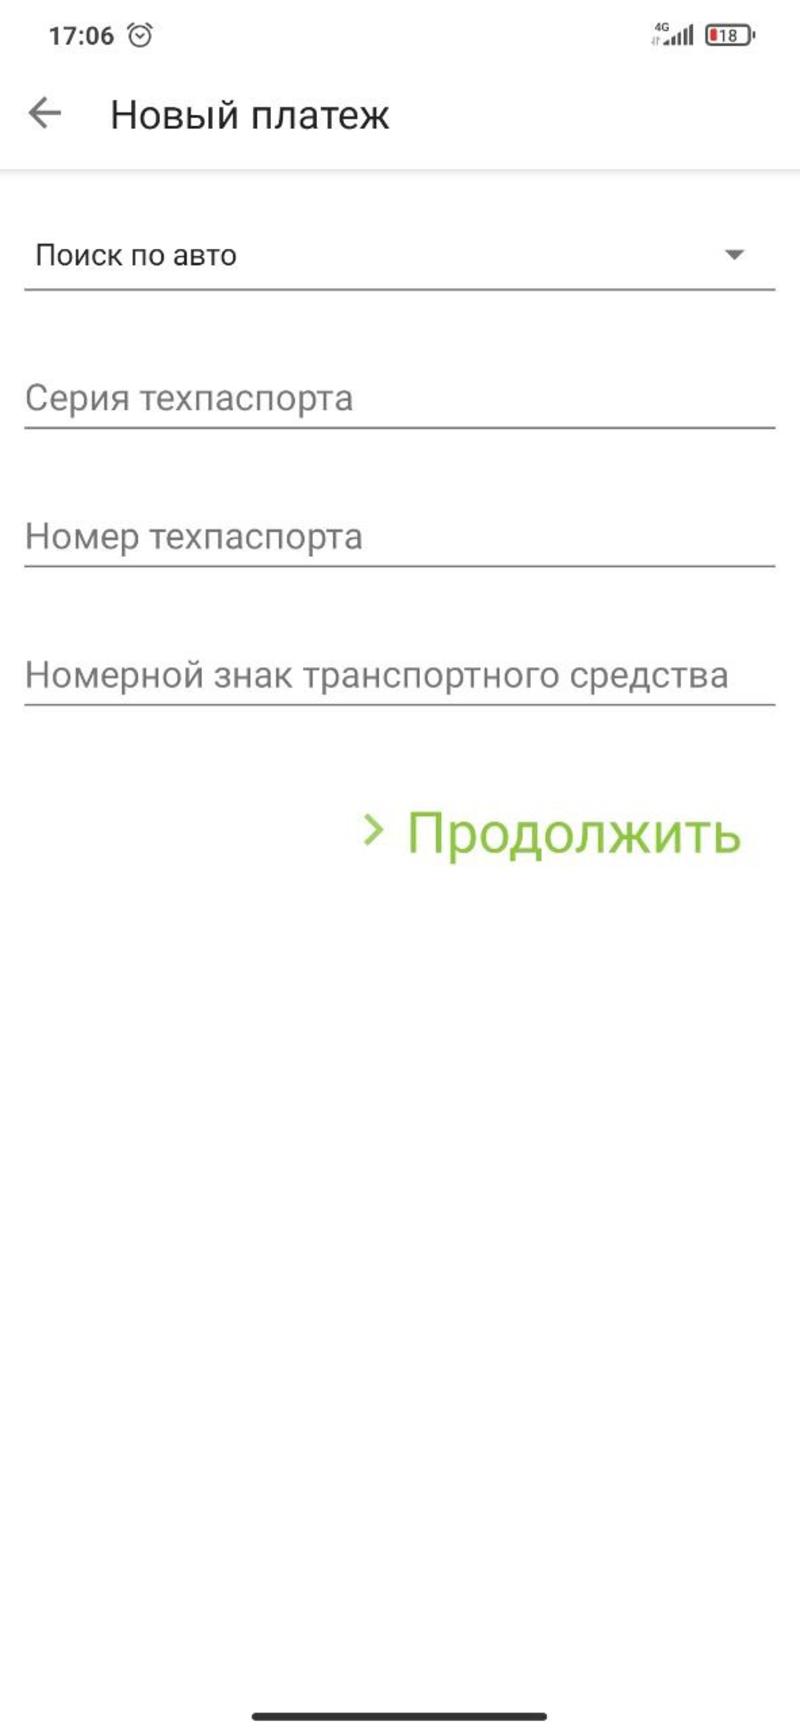 Как оплатить штраф за нарушение ПДД со скидкой в Украине: инструкция / скриншот